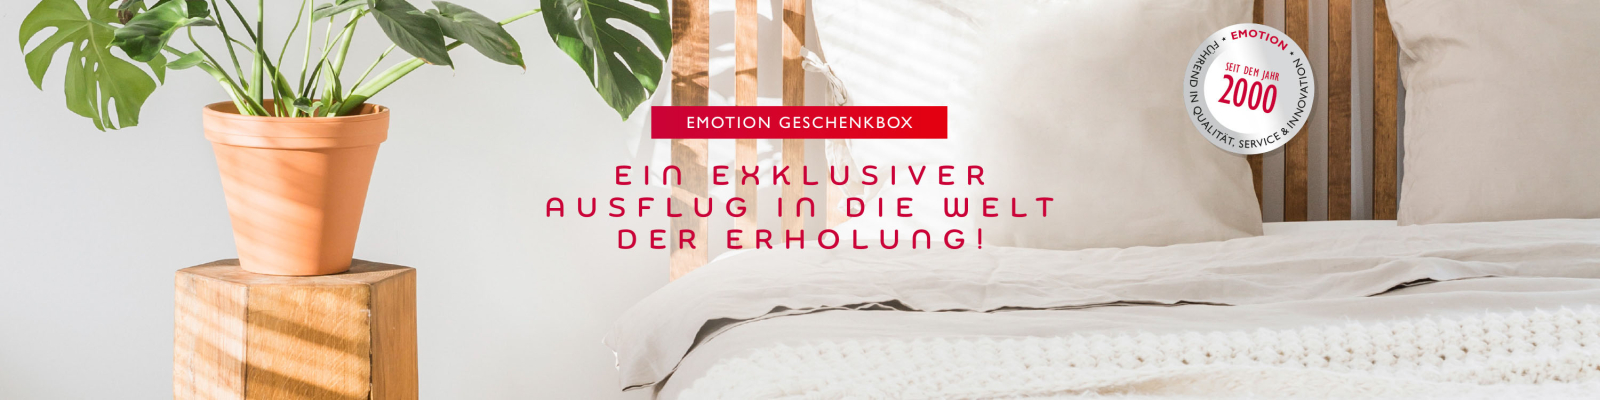 Banner EMOTION Geschenkbox1